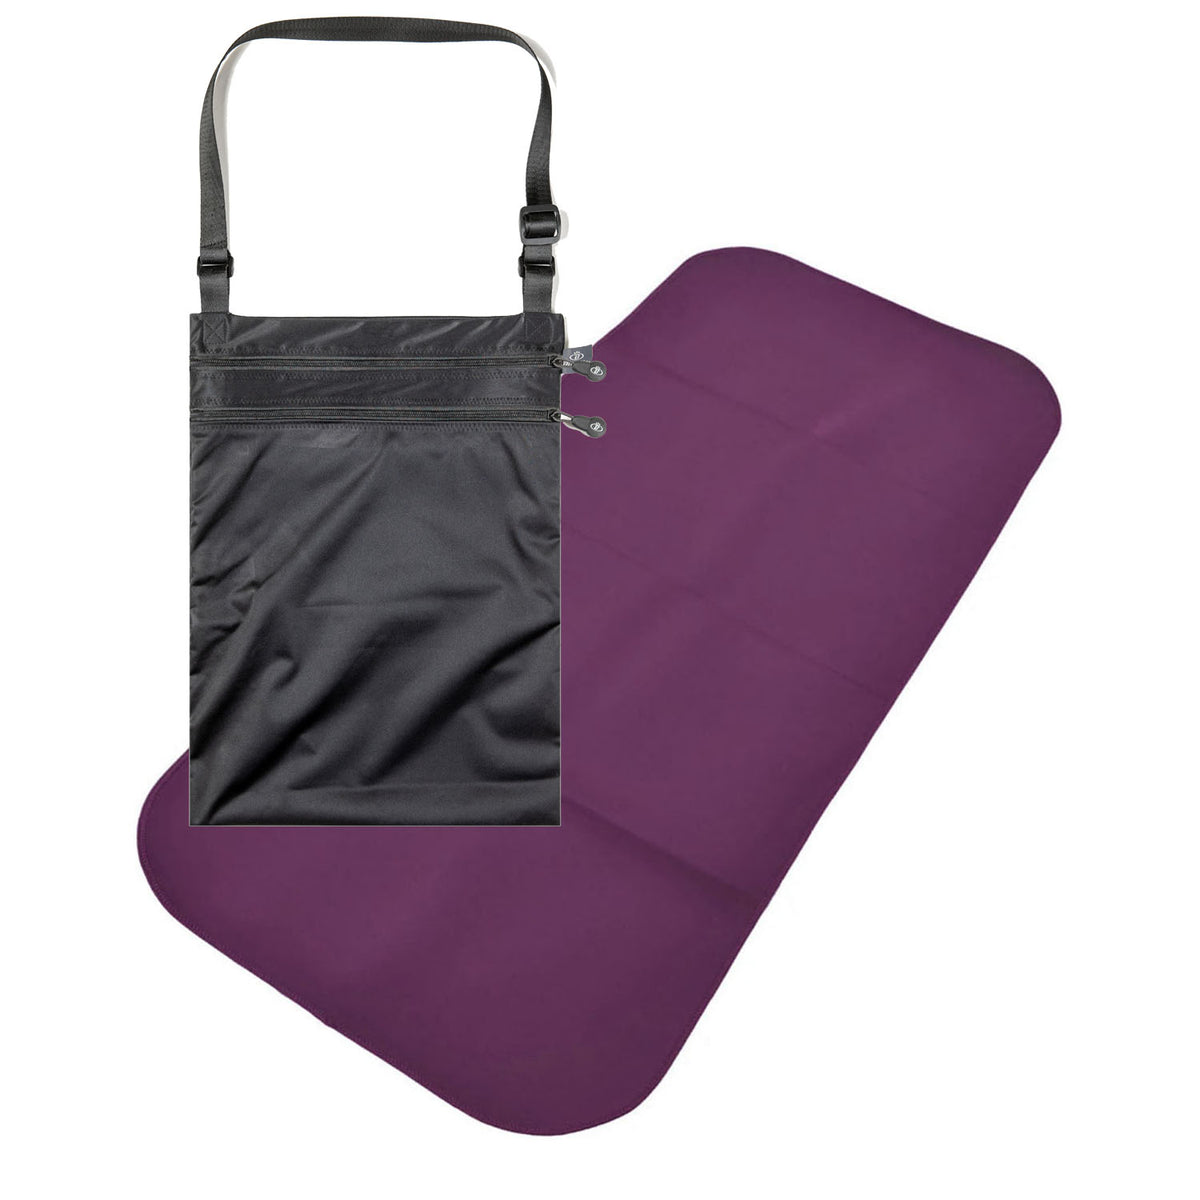 Junior Changing Mat and Waterproof Bag Set - Aubergine/Black